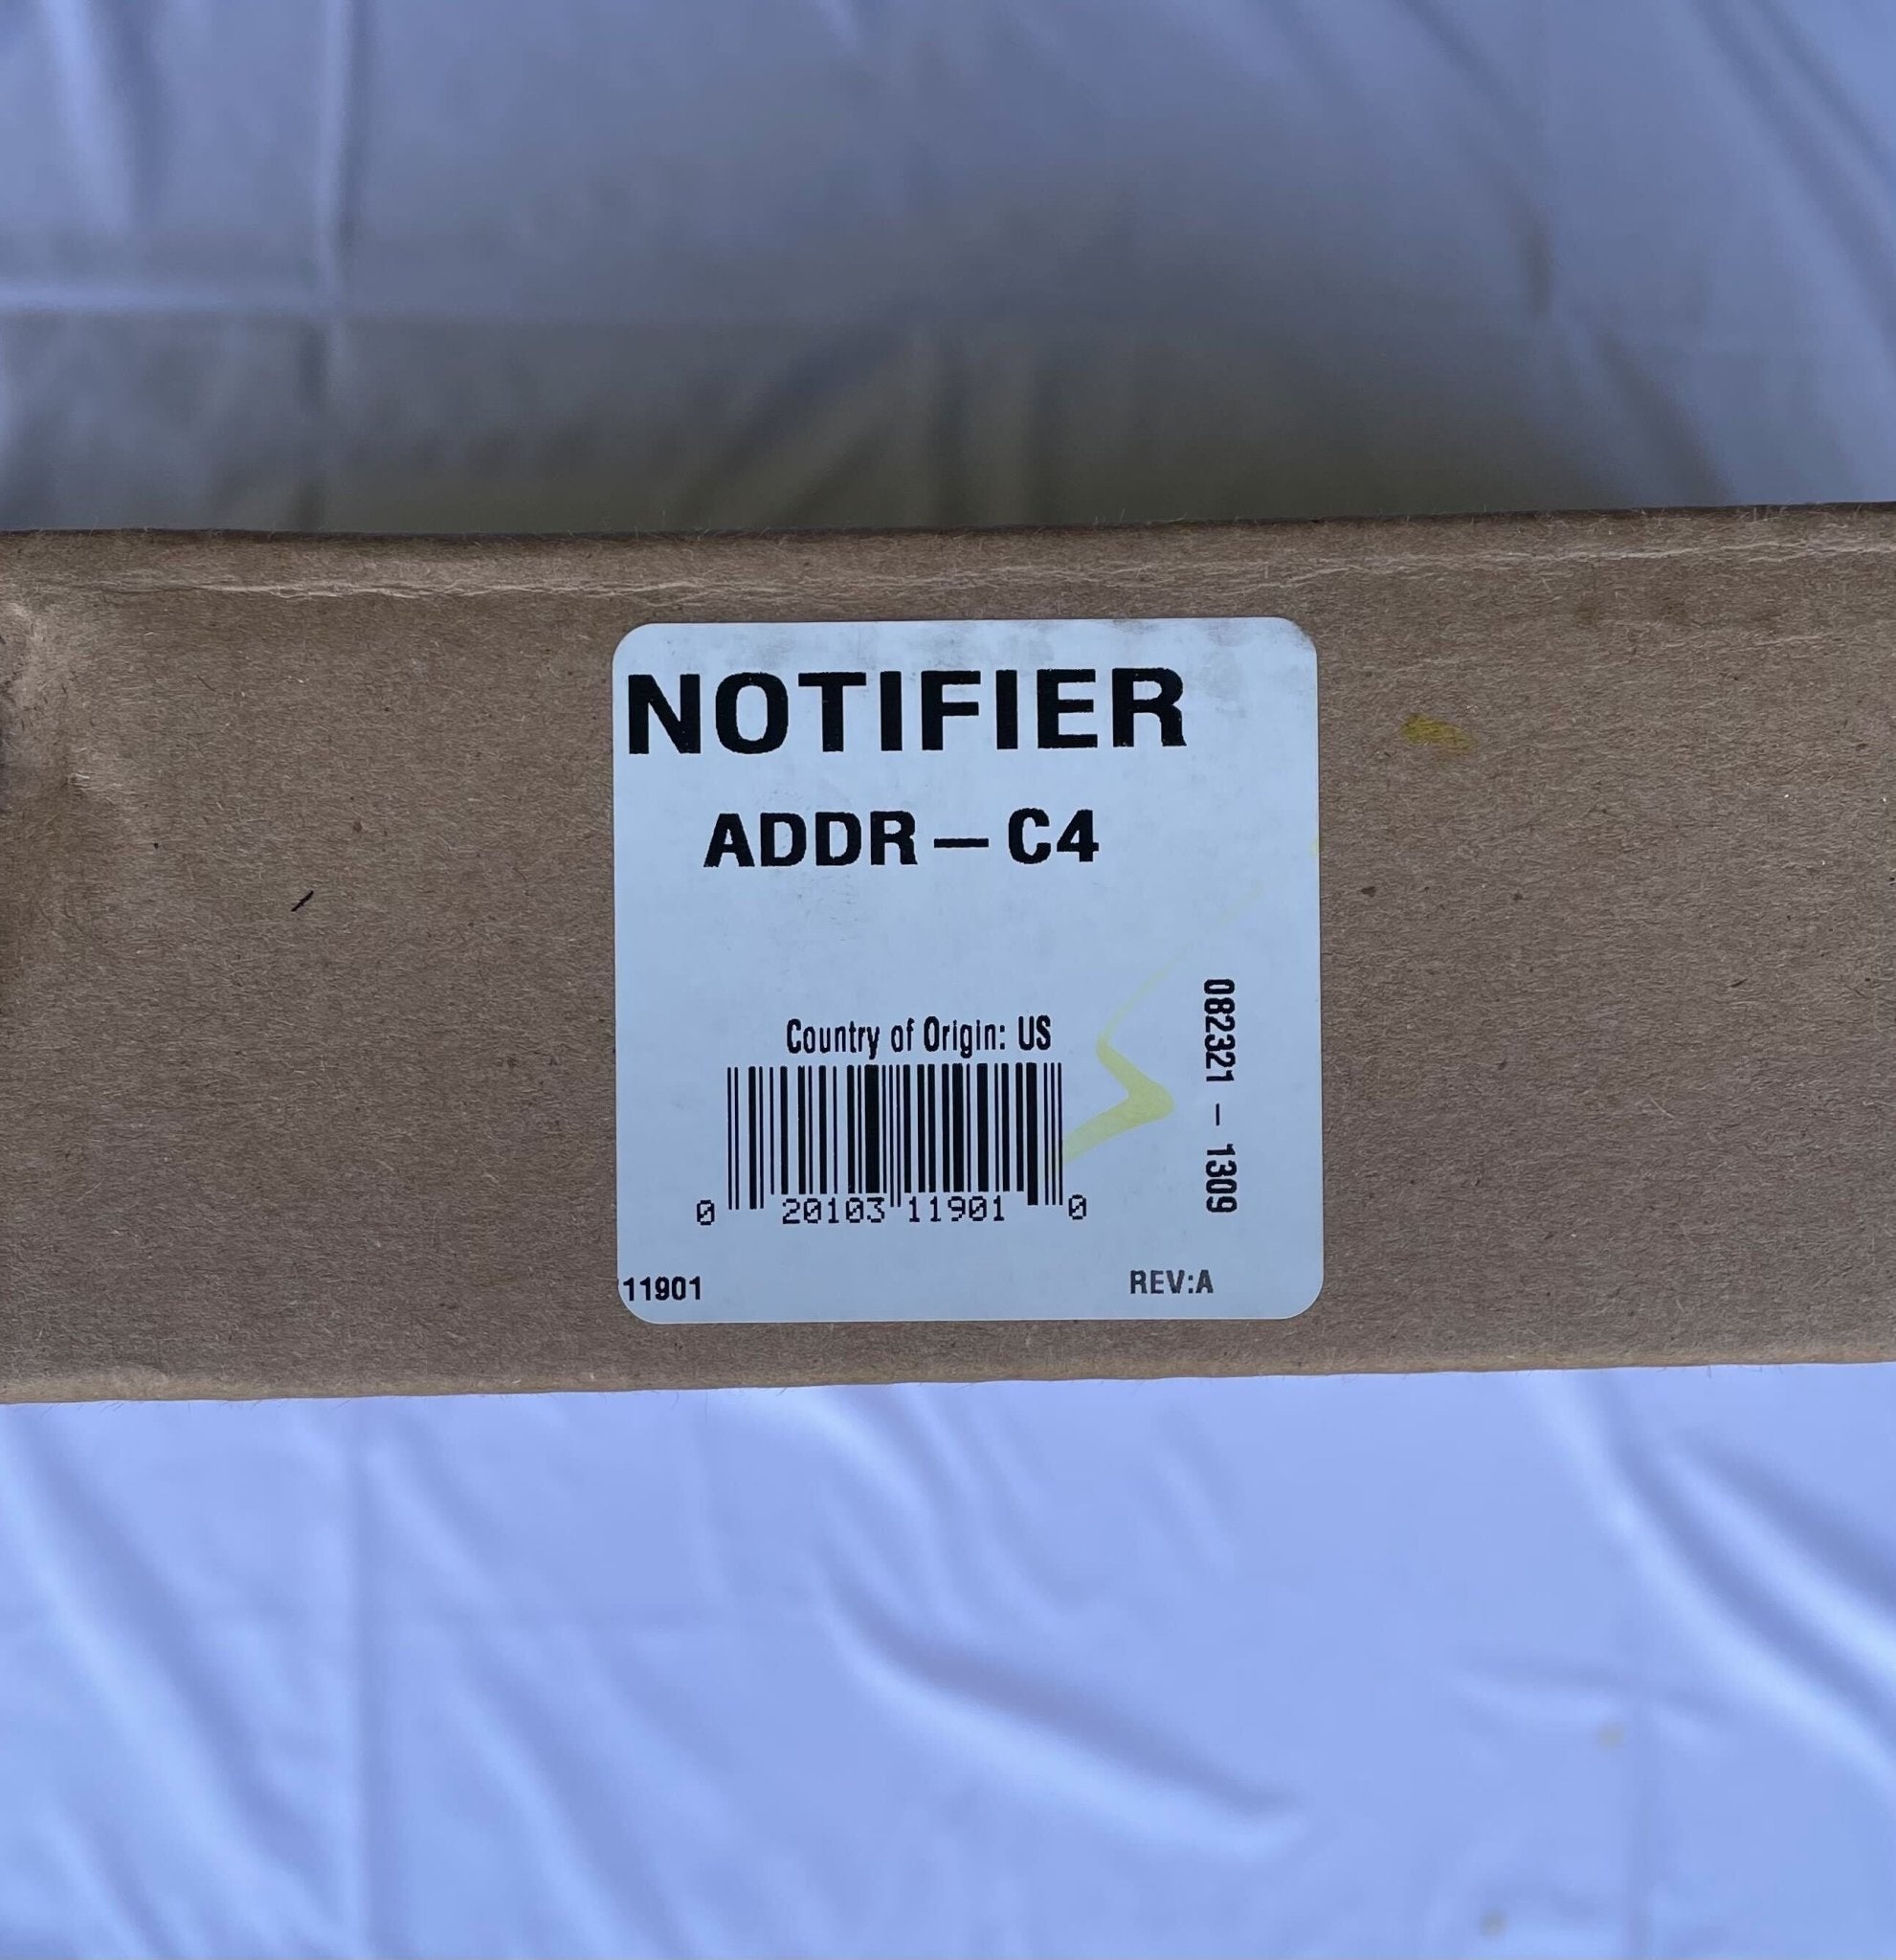 Notifier ADDR-C4 - The Fire Alarm Supplier